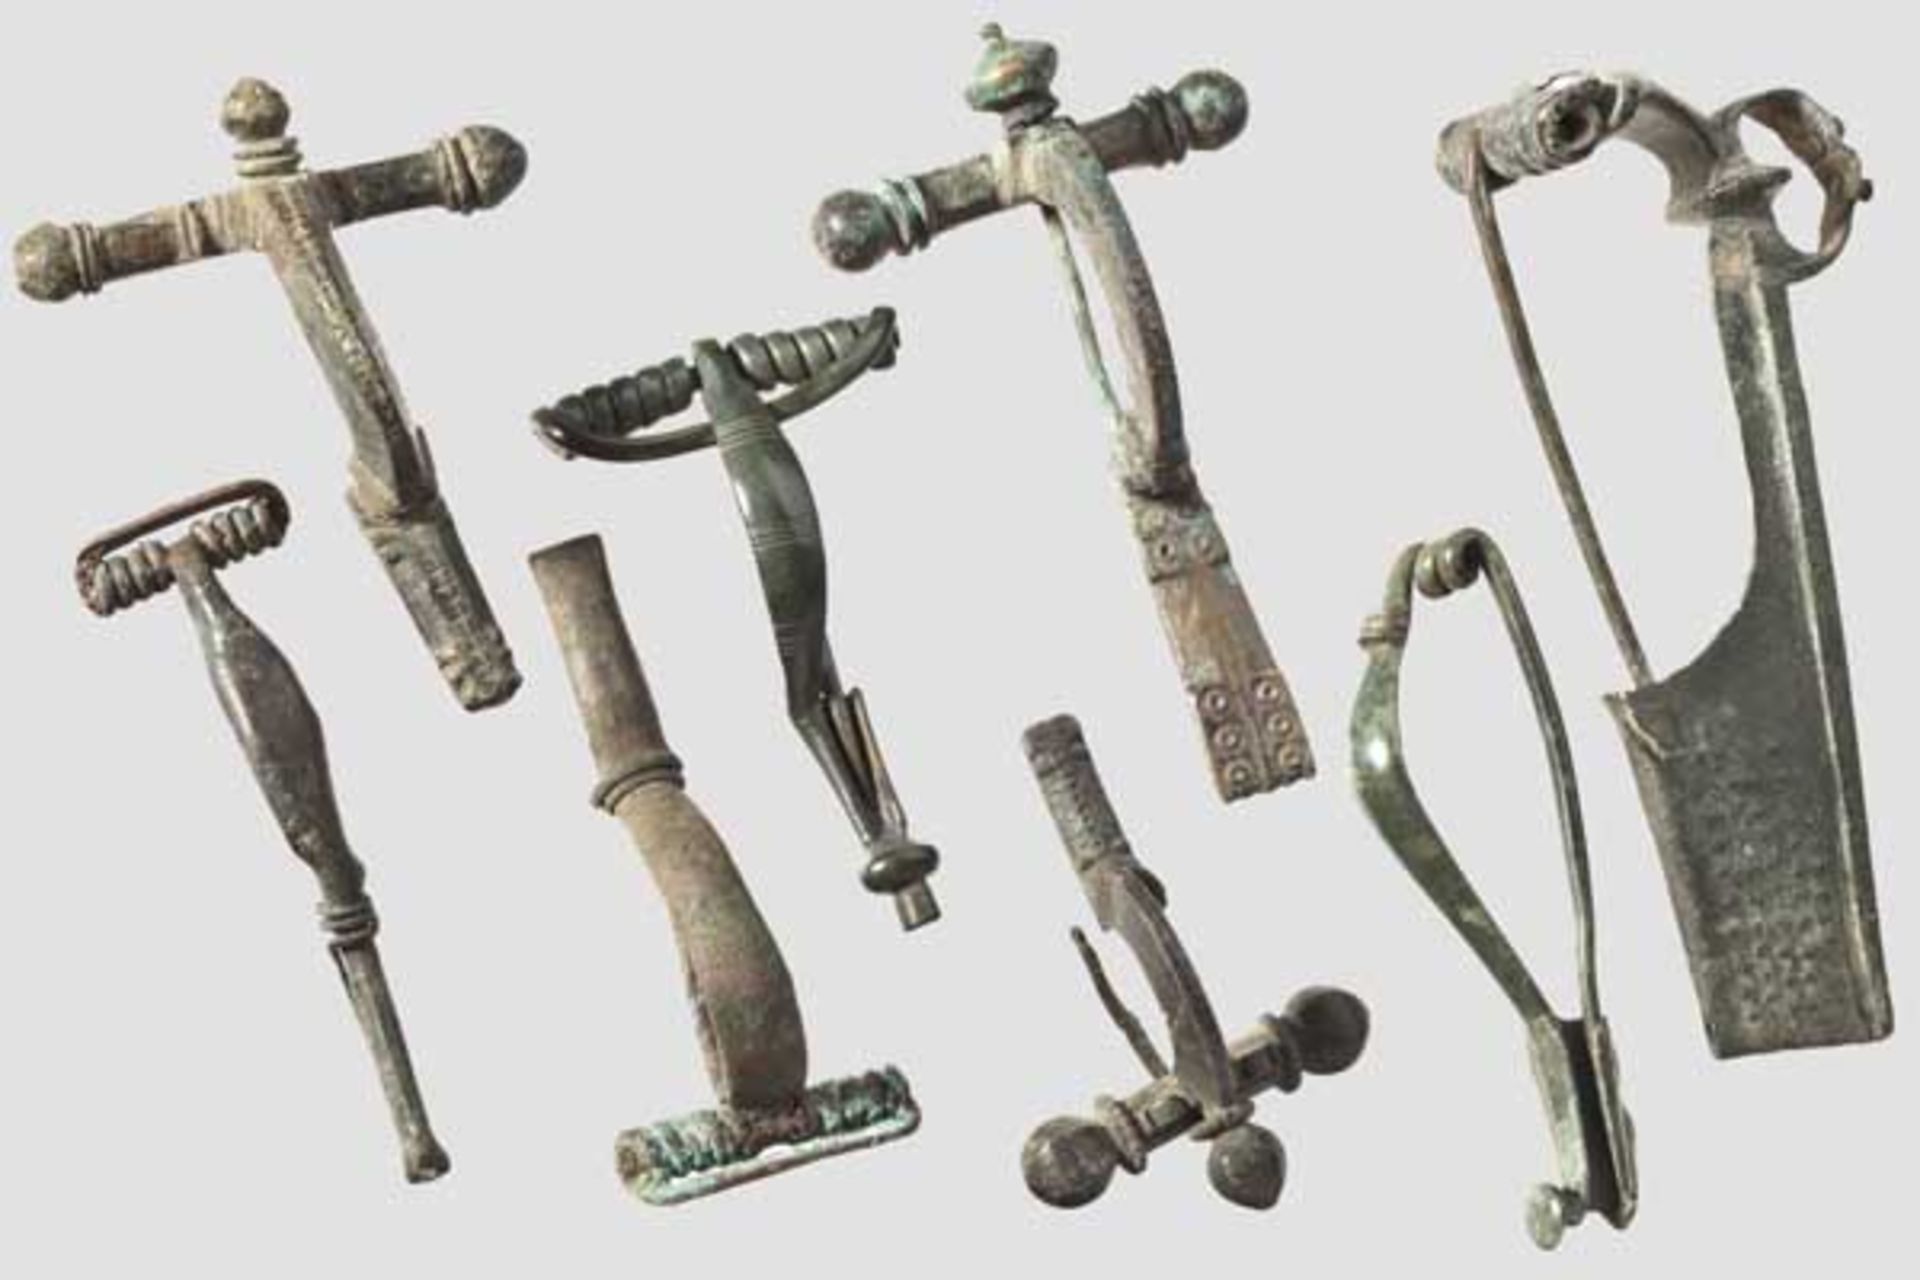 Acht Bronzefibeln, 5. Jhdt. v. - 4. Jhdt. n. Chr.   Zwei späthallstattzeitliche Bronzefibeln, 5.